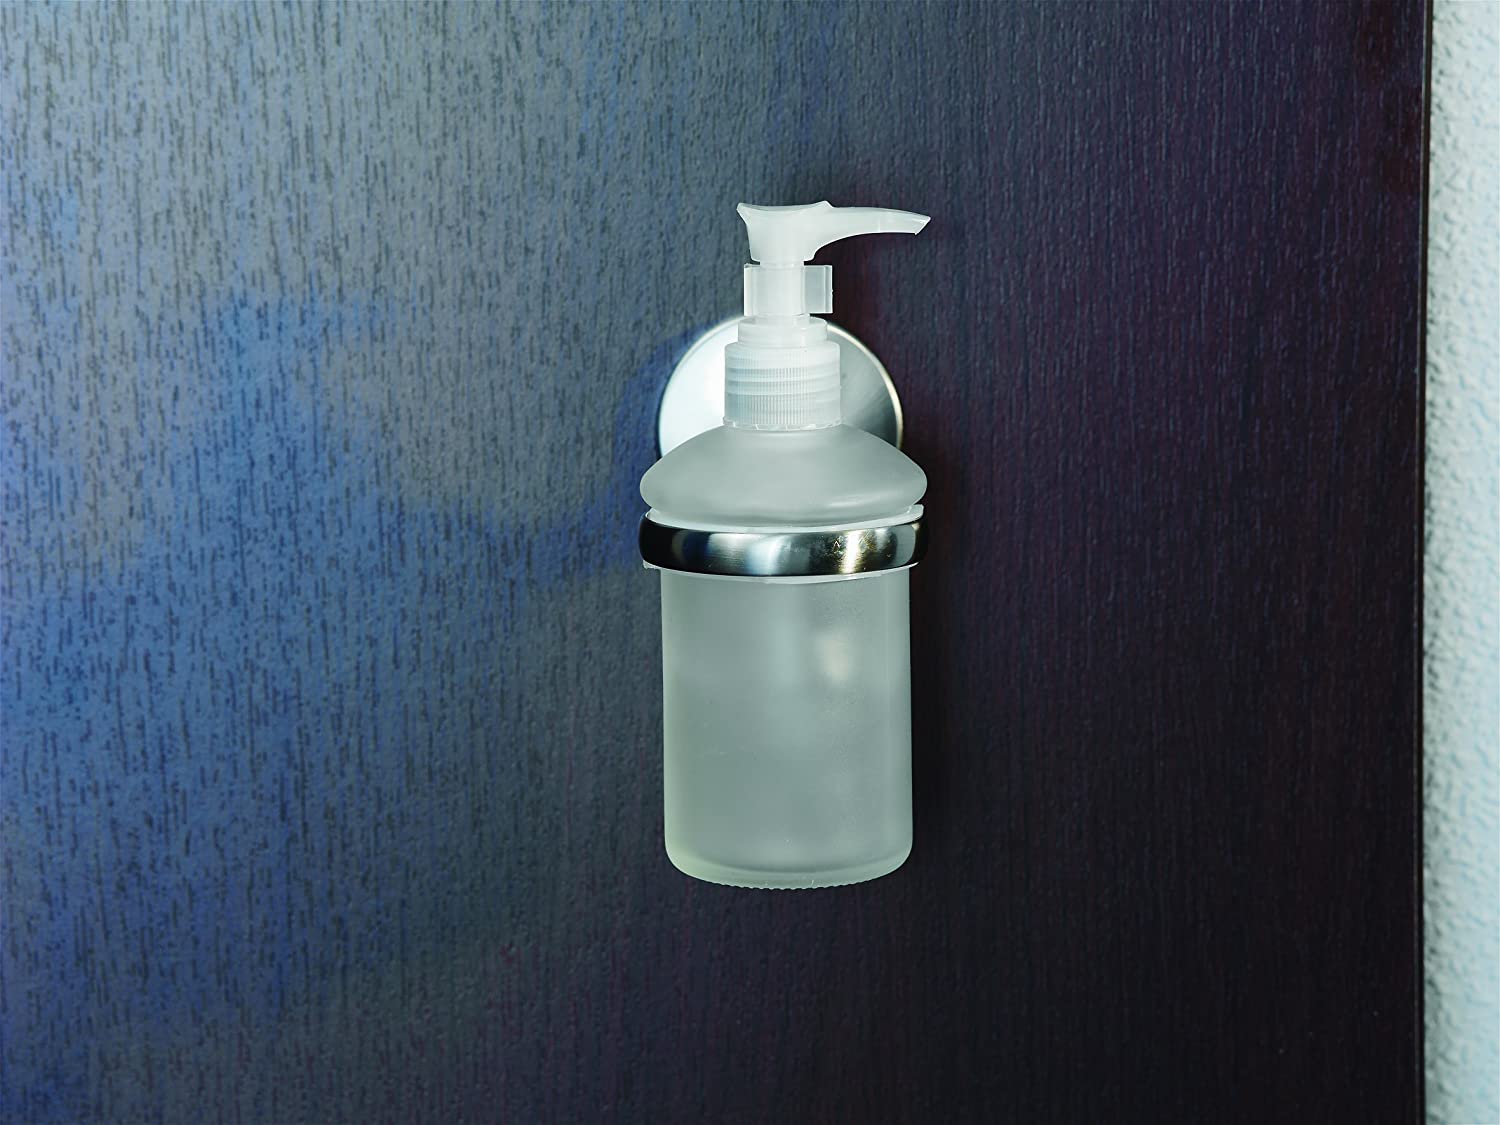 Seifenspender FUSION, Behälter für Flüssigseife, Seifenbevorrater mit vernickelter Wandhalterung (Farbe: Silber/Milchig), Menge: 1 Stück